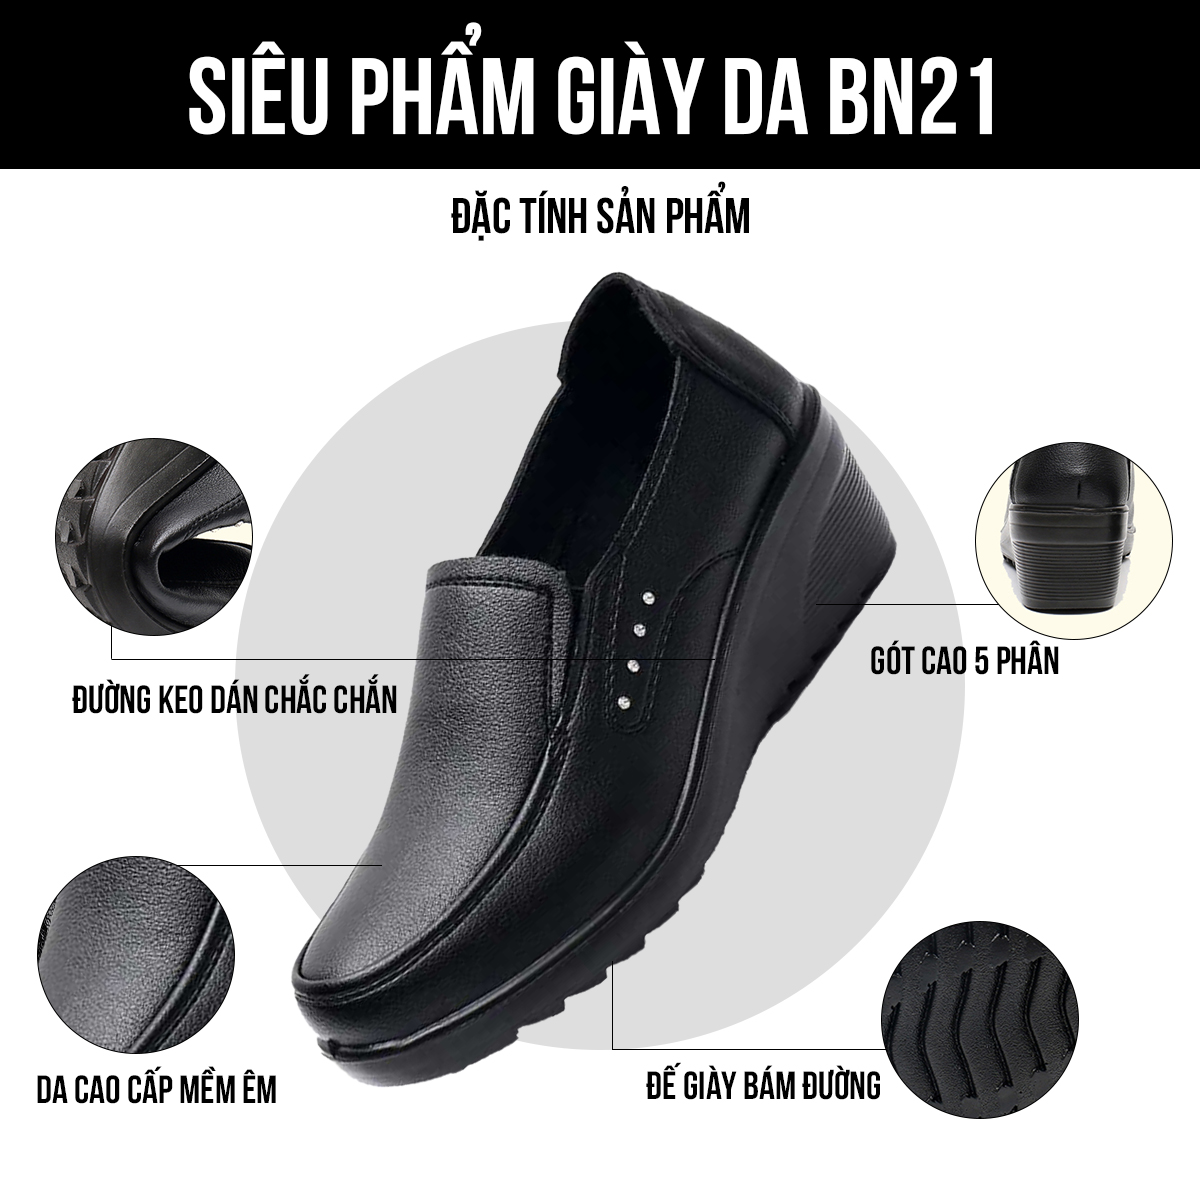 Giày lười nữ BN21 đặc tính sản phẩm